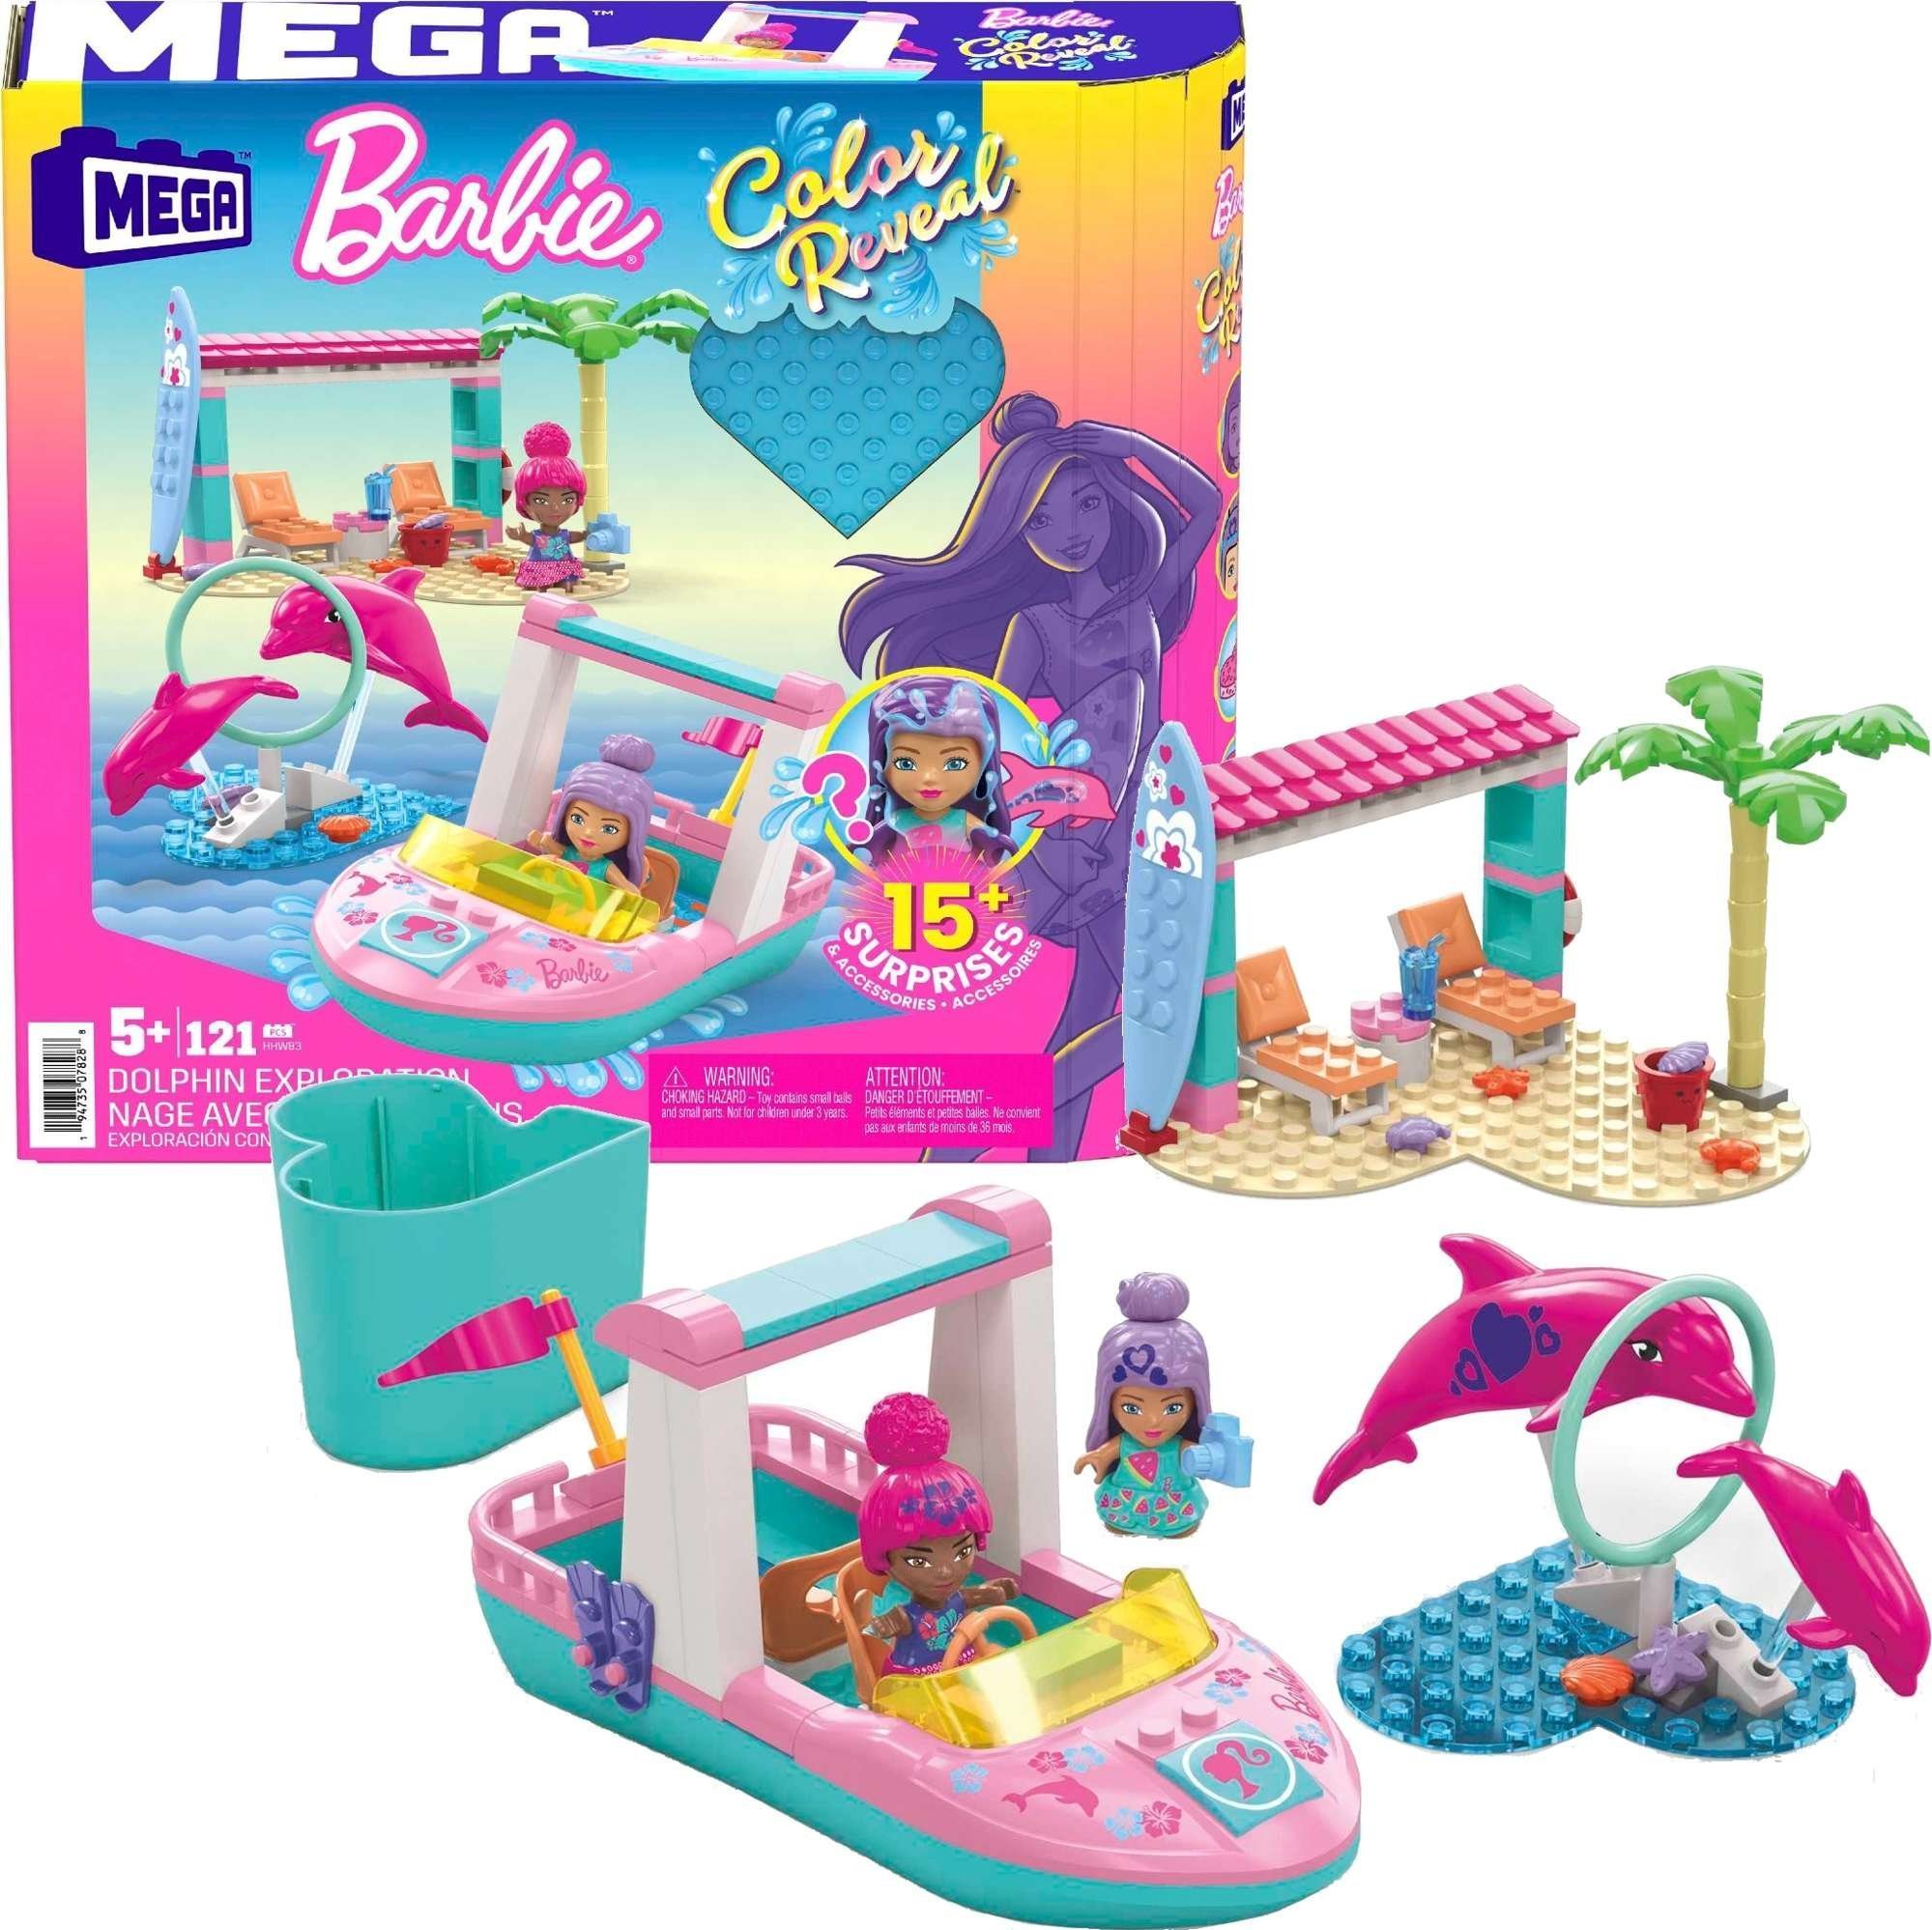 Papusa Barbie Mattel MEGA BLOKS Color Reveal Adventure cu delfini Set blocuri HHW83 p4 MATTEL